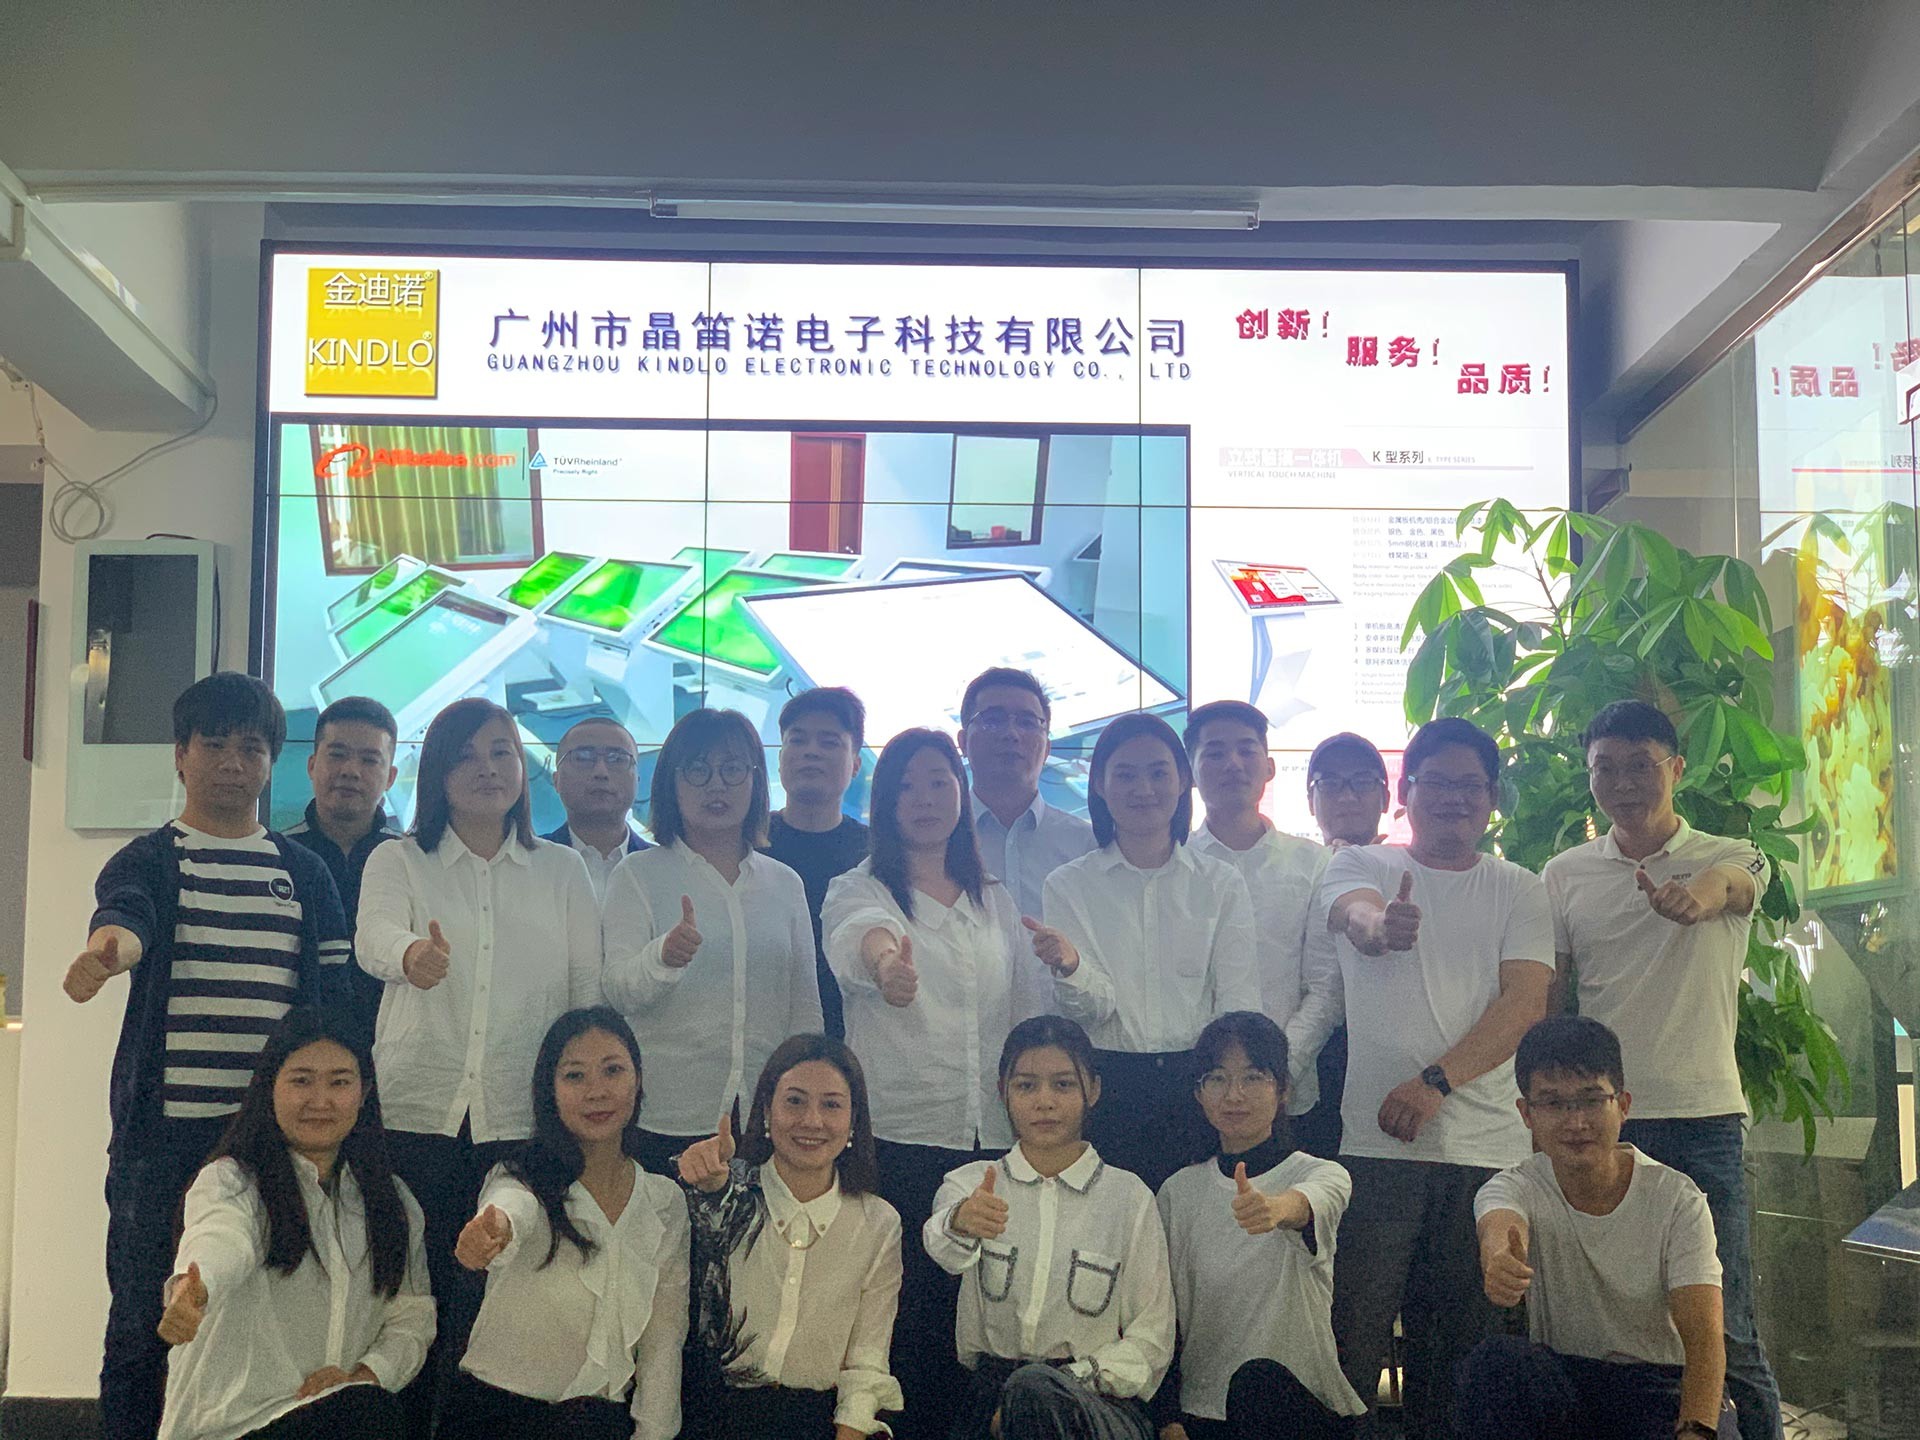 Çin Guangzhou Jingdinuo Electronic Technology Co., Ltd.